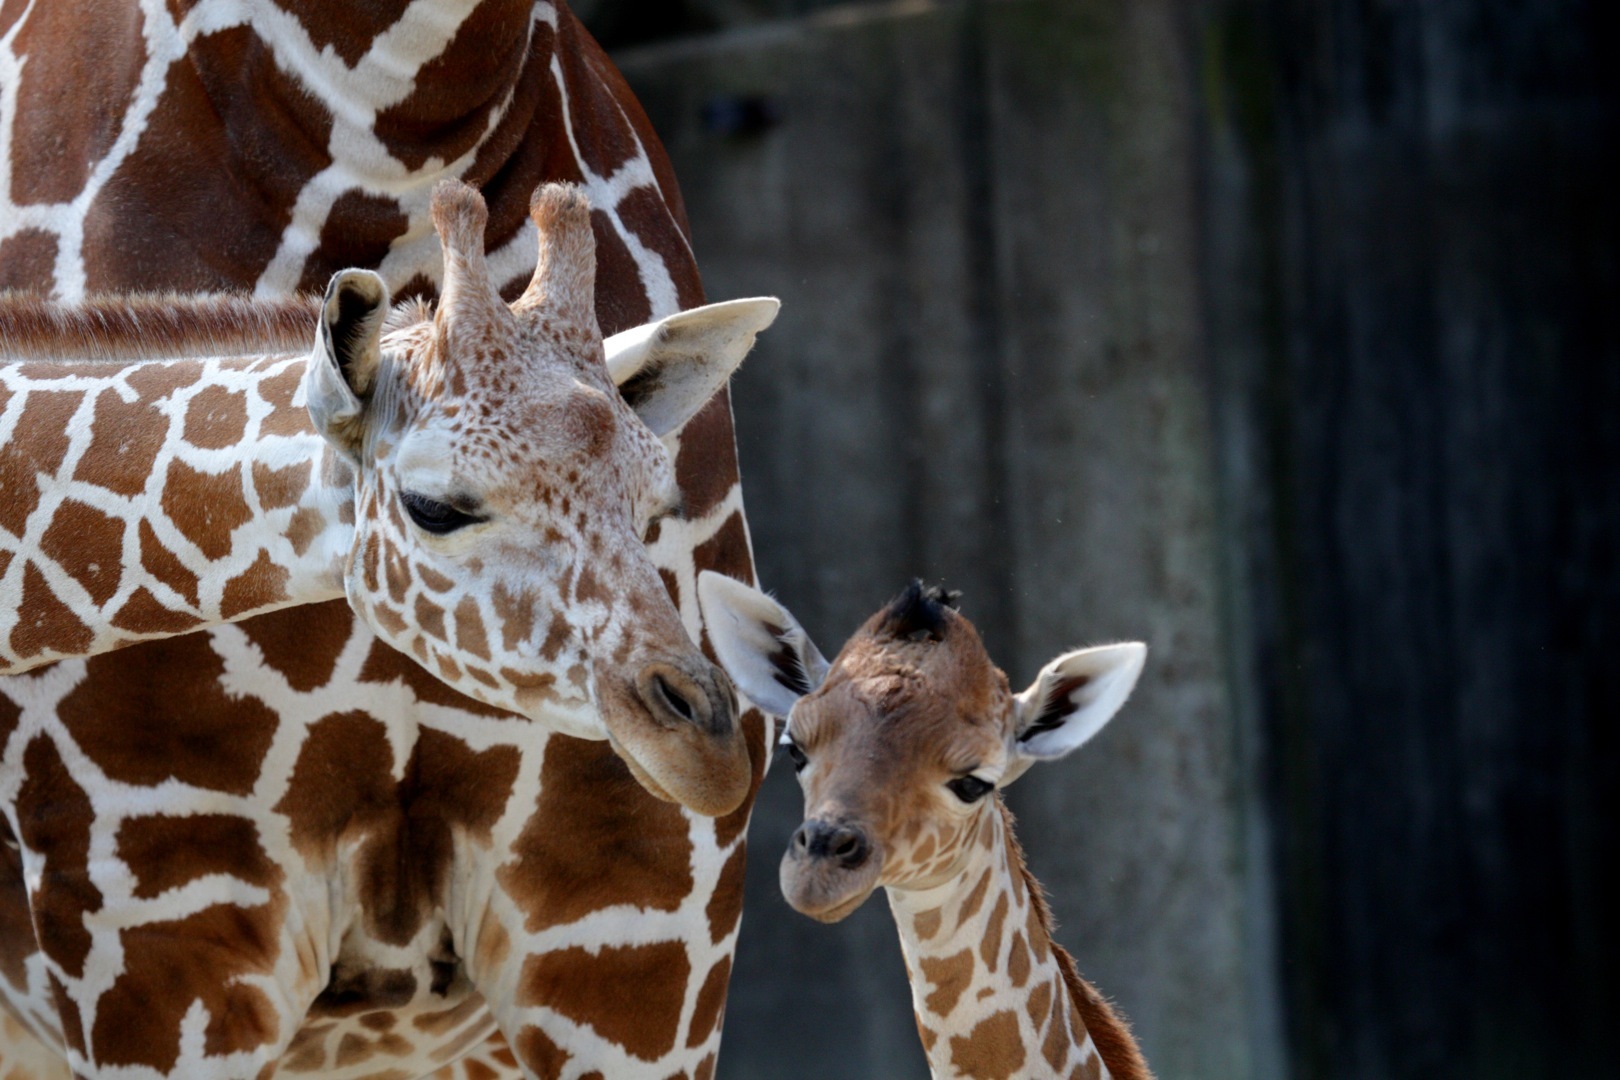 Le projet brésilien Embrapa prévoit de cloner 8 espèces animales en voie de disparition au Brésil. Ils espèrent toutefois rapidement pouvoir cloner les girafes et éléphants d'Afrique qui font parties des espèces gravement en danger. © Frank Peter, Flickr CC by-nc-nd-2.0